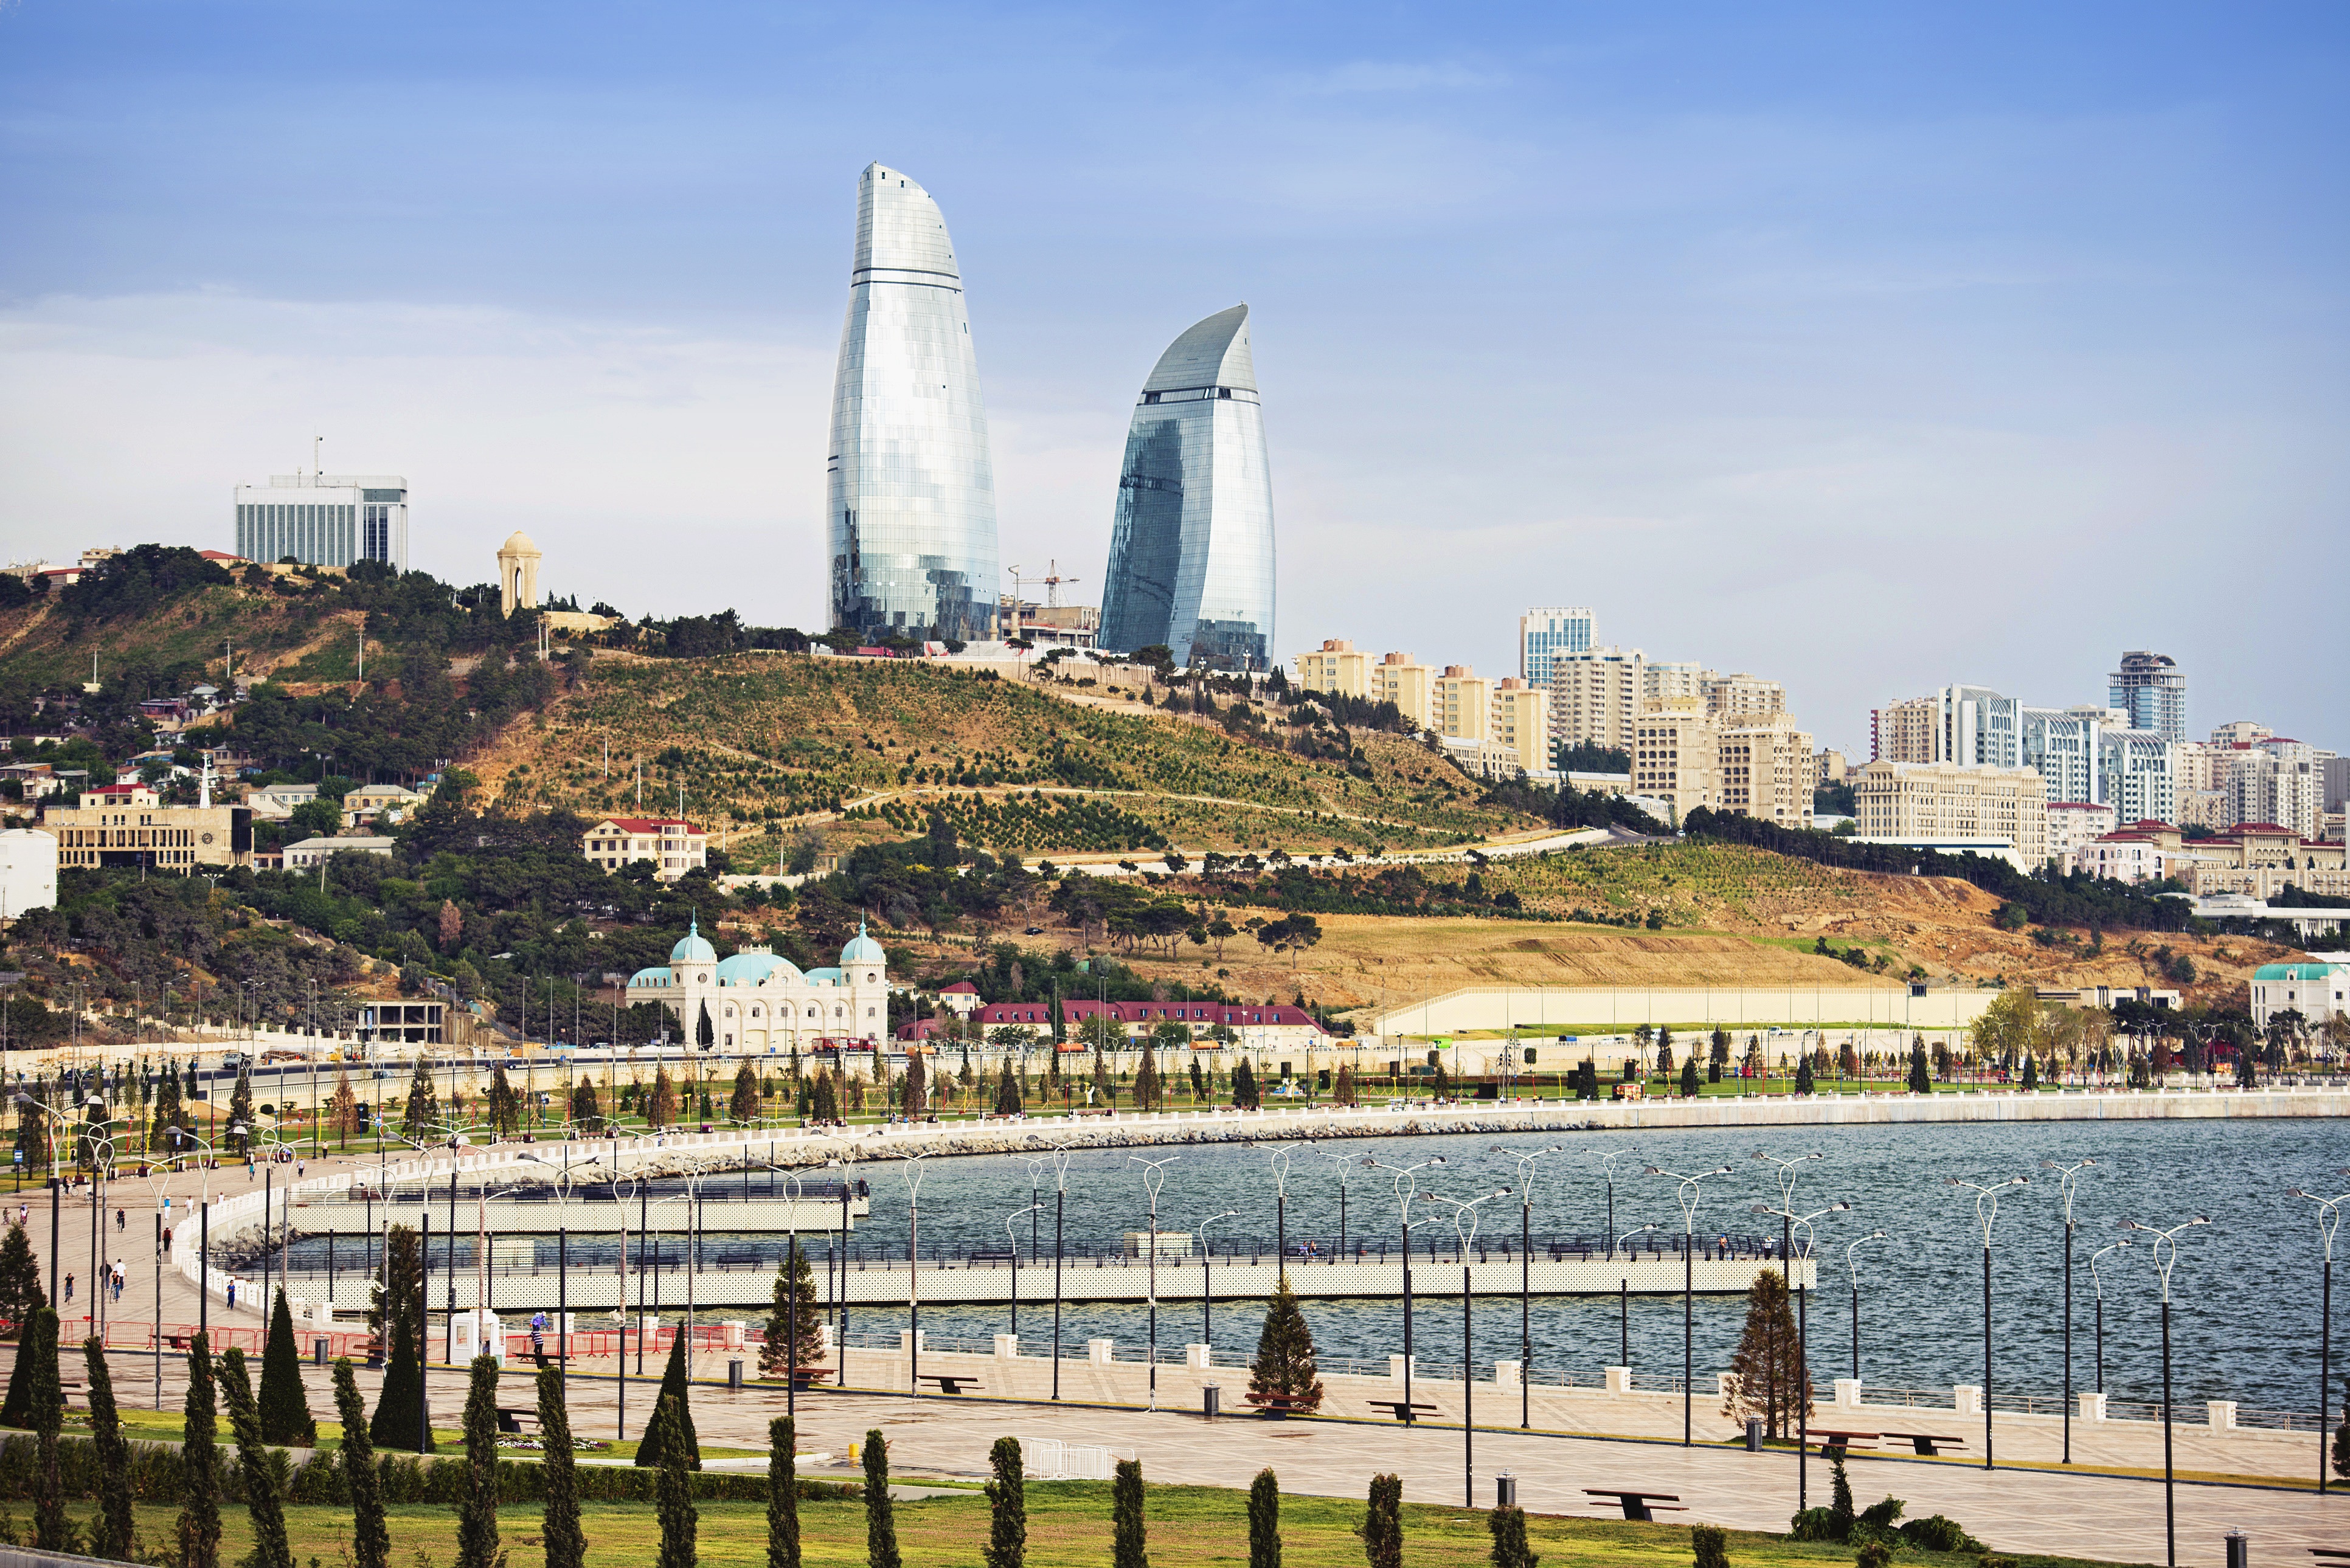 Azerbaijan, Lebanon eye prospects for tourism cooperation